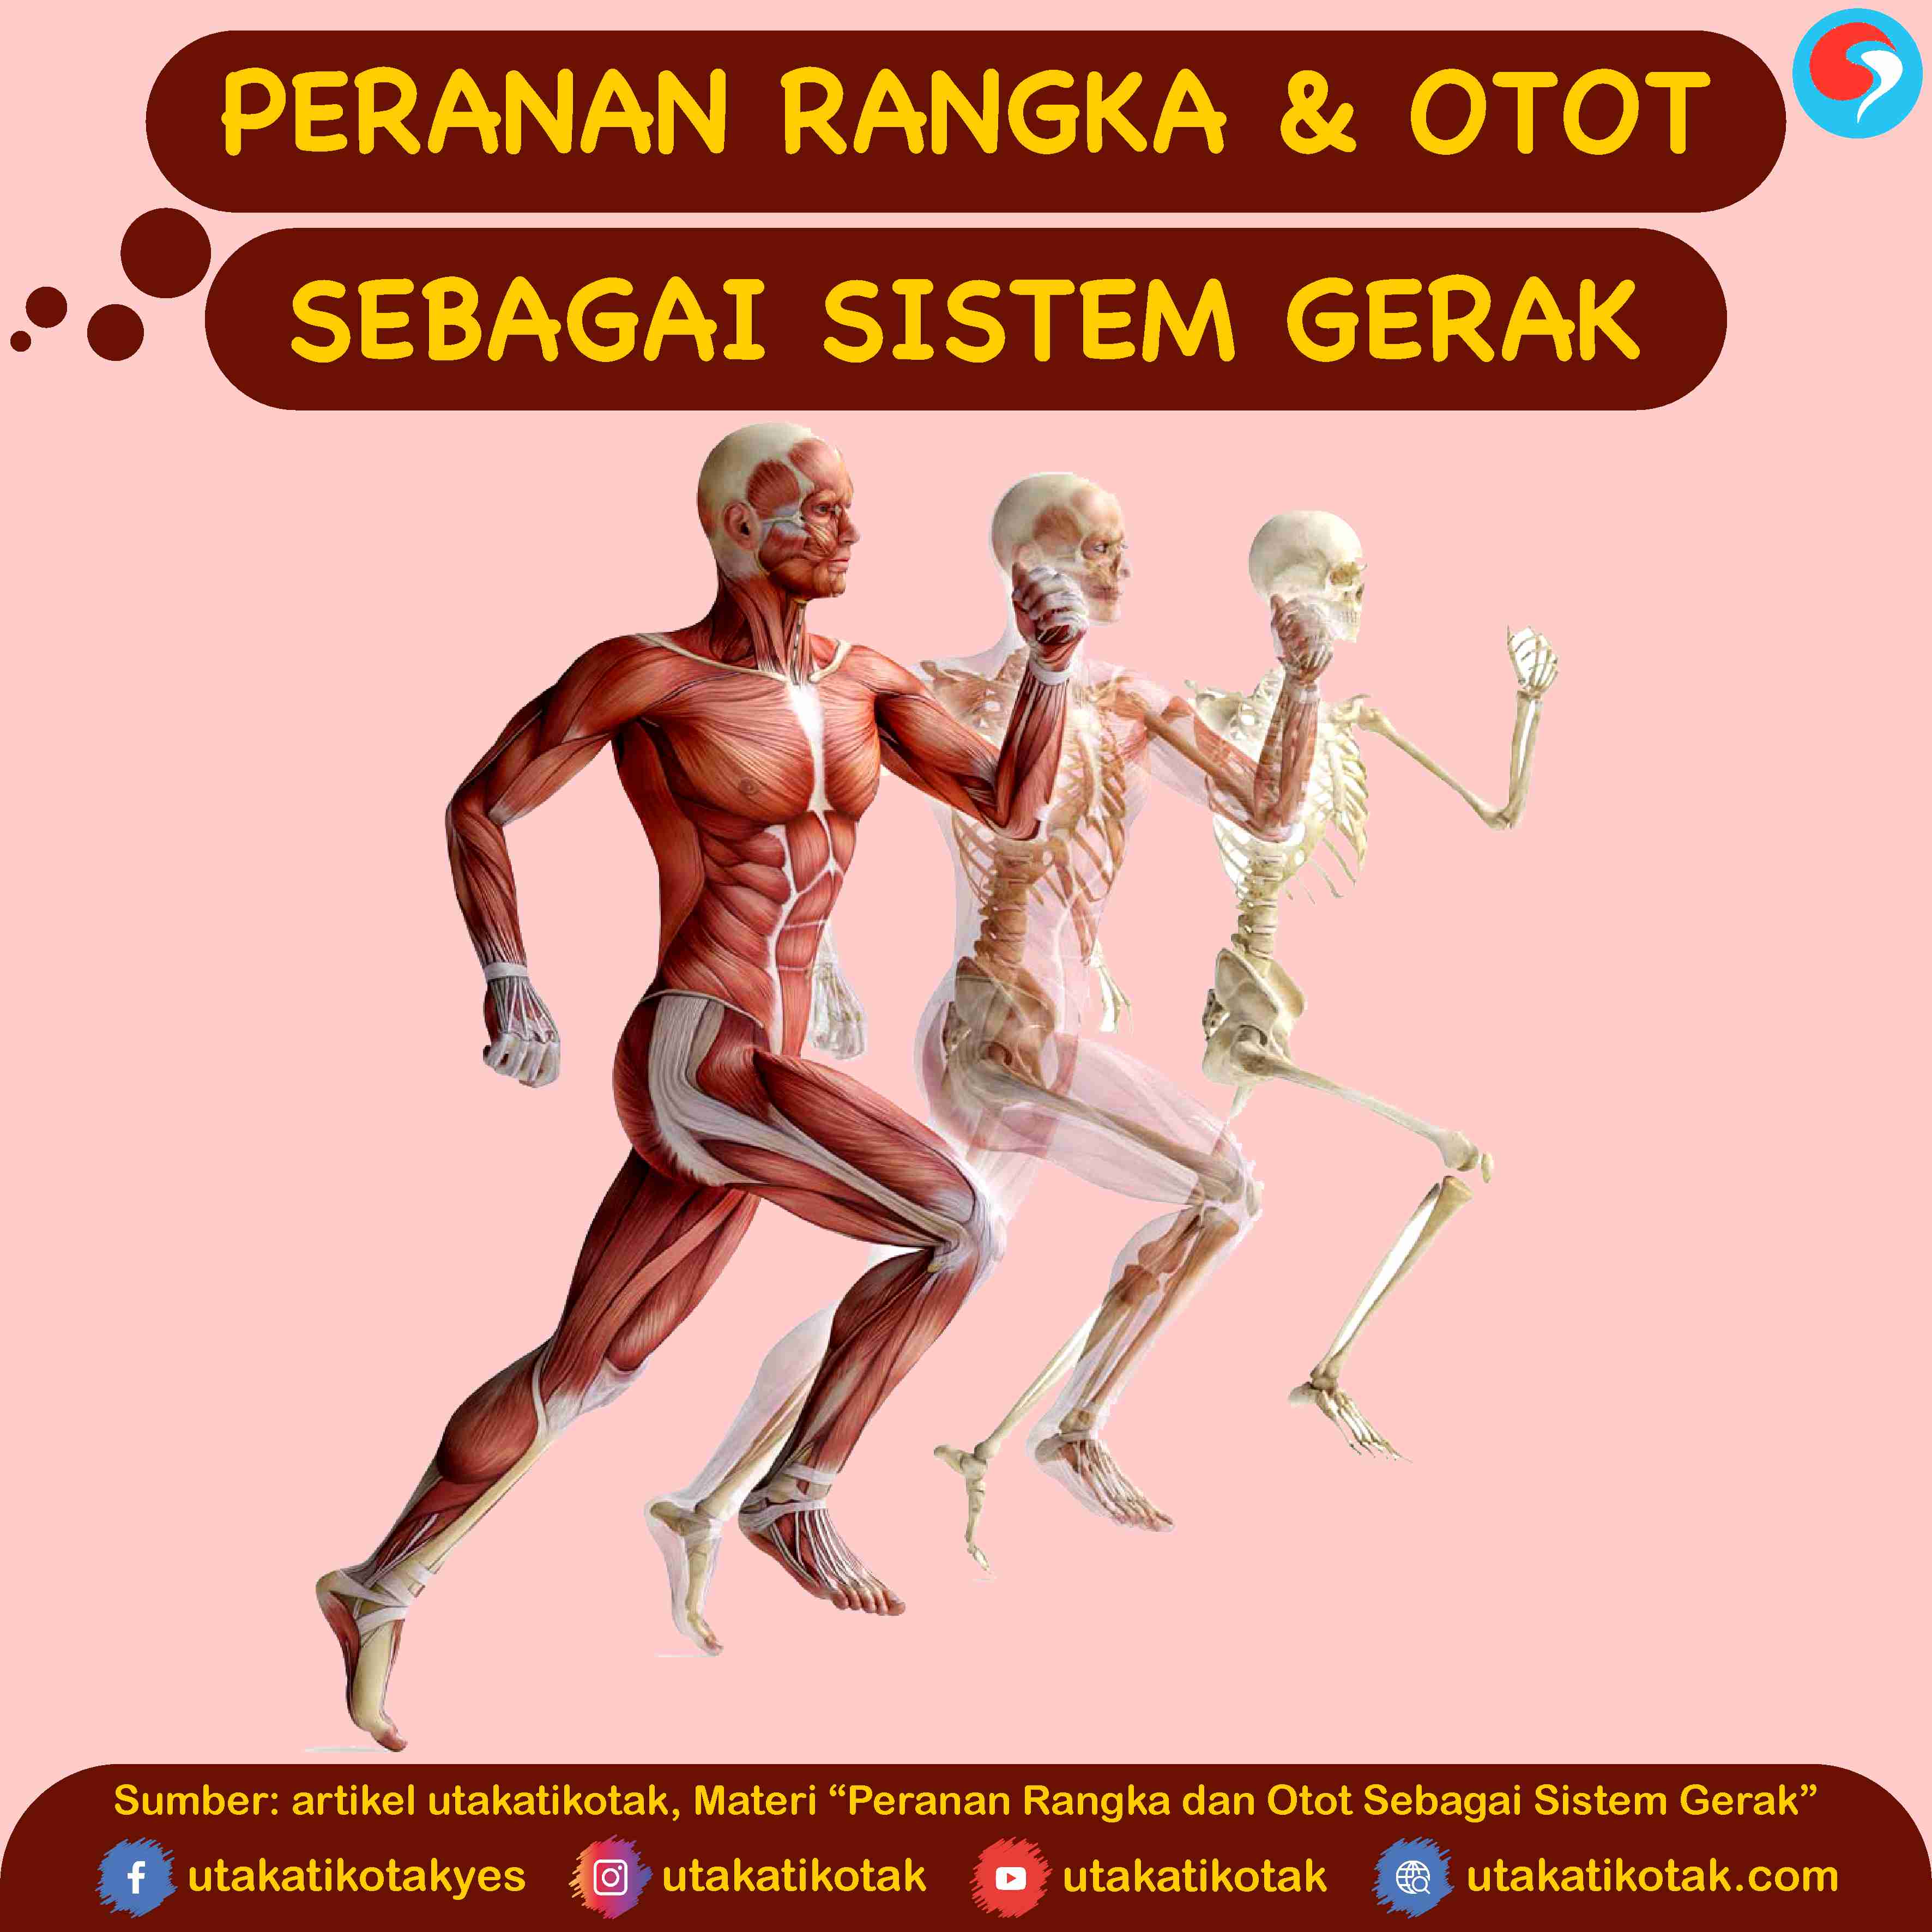 Peranan Rangka dan Otot Sebagai Sistem Gerak